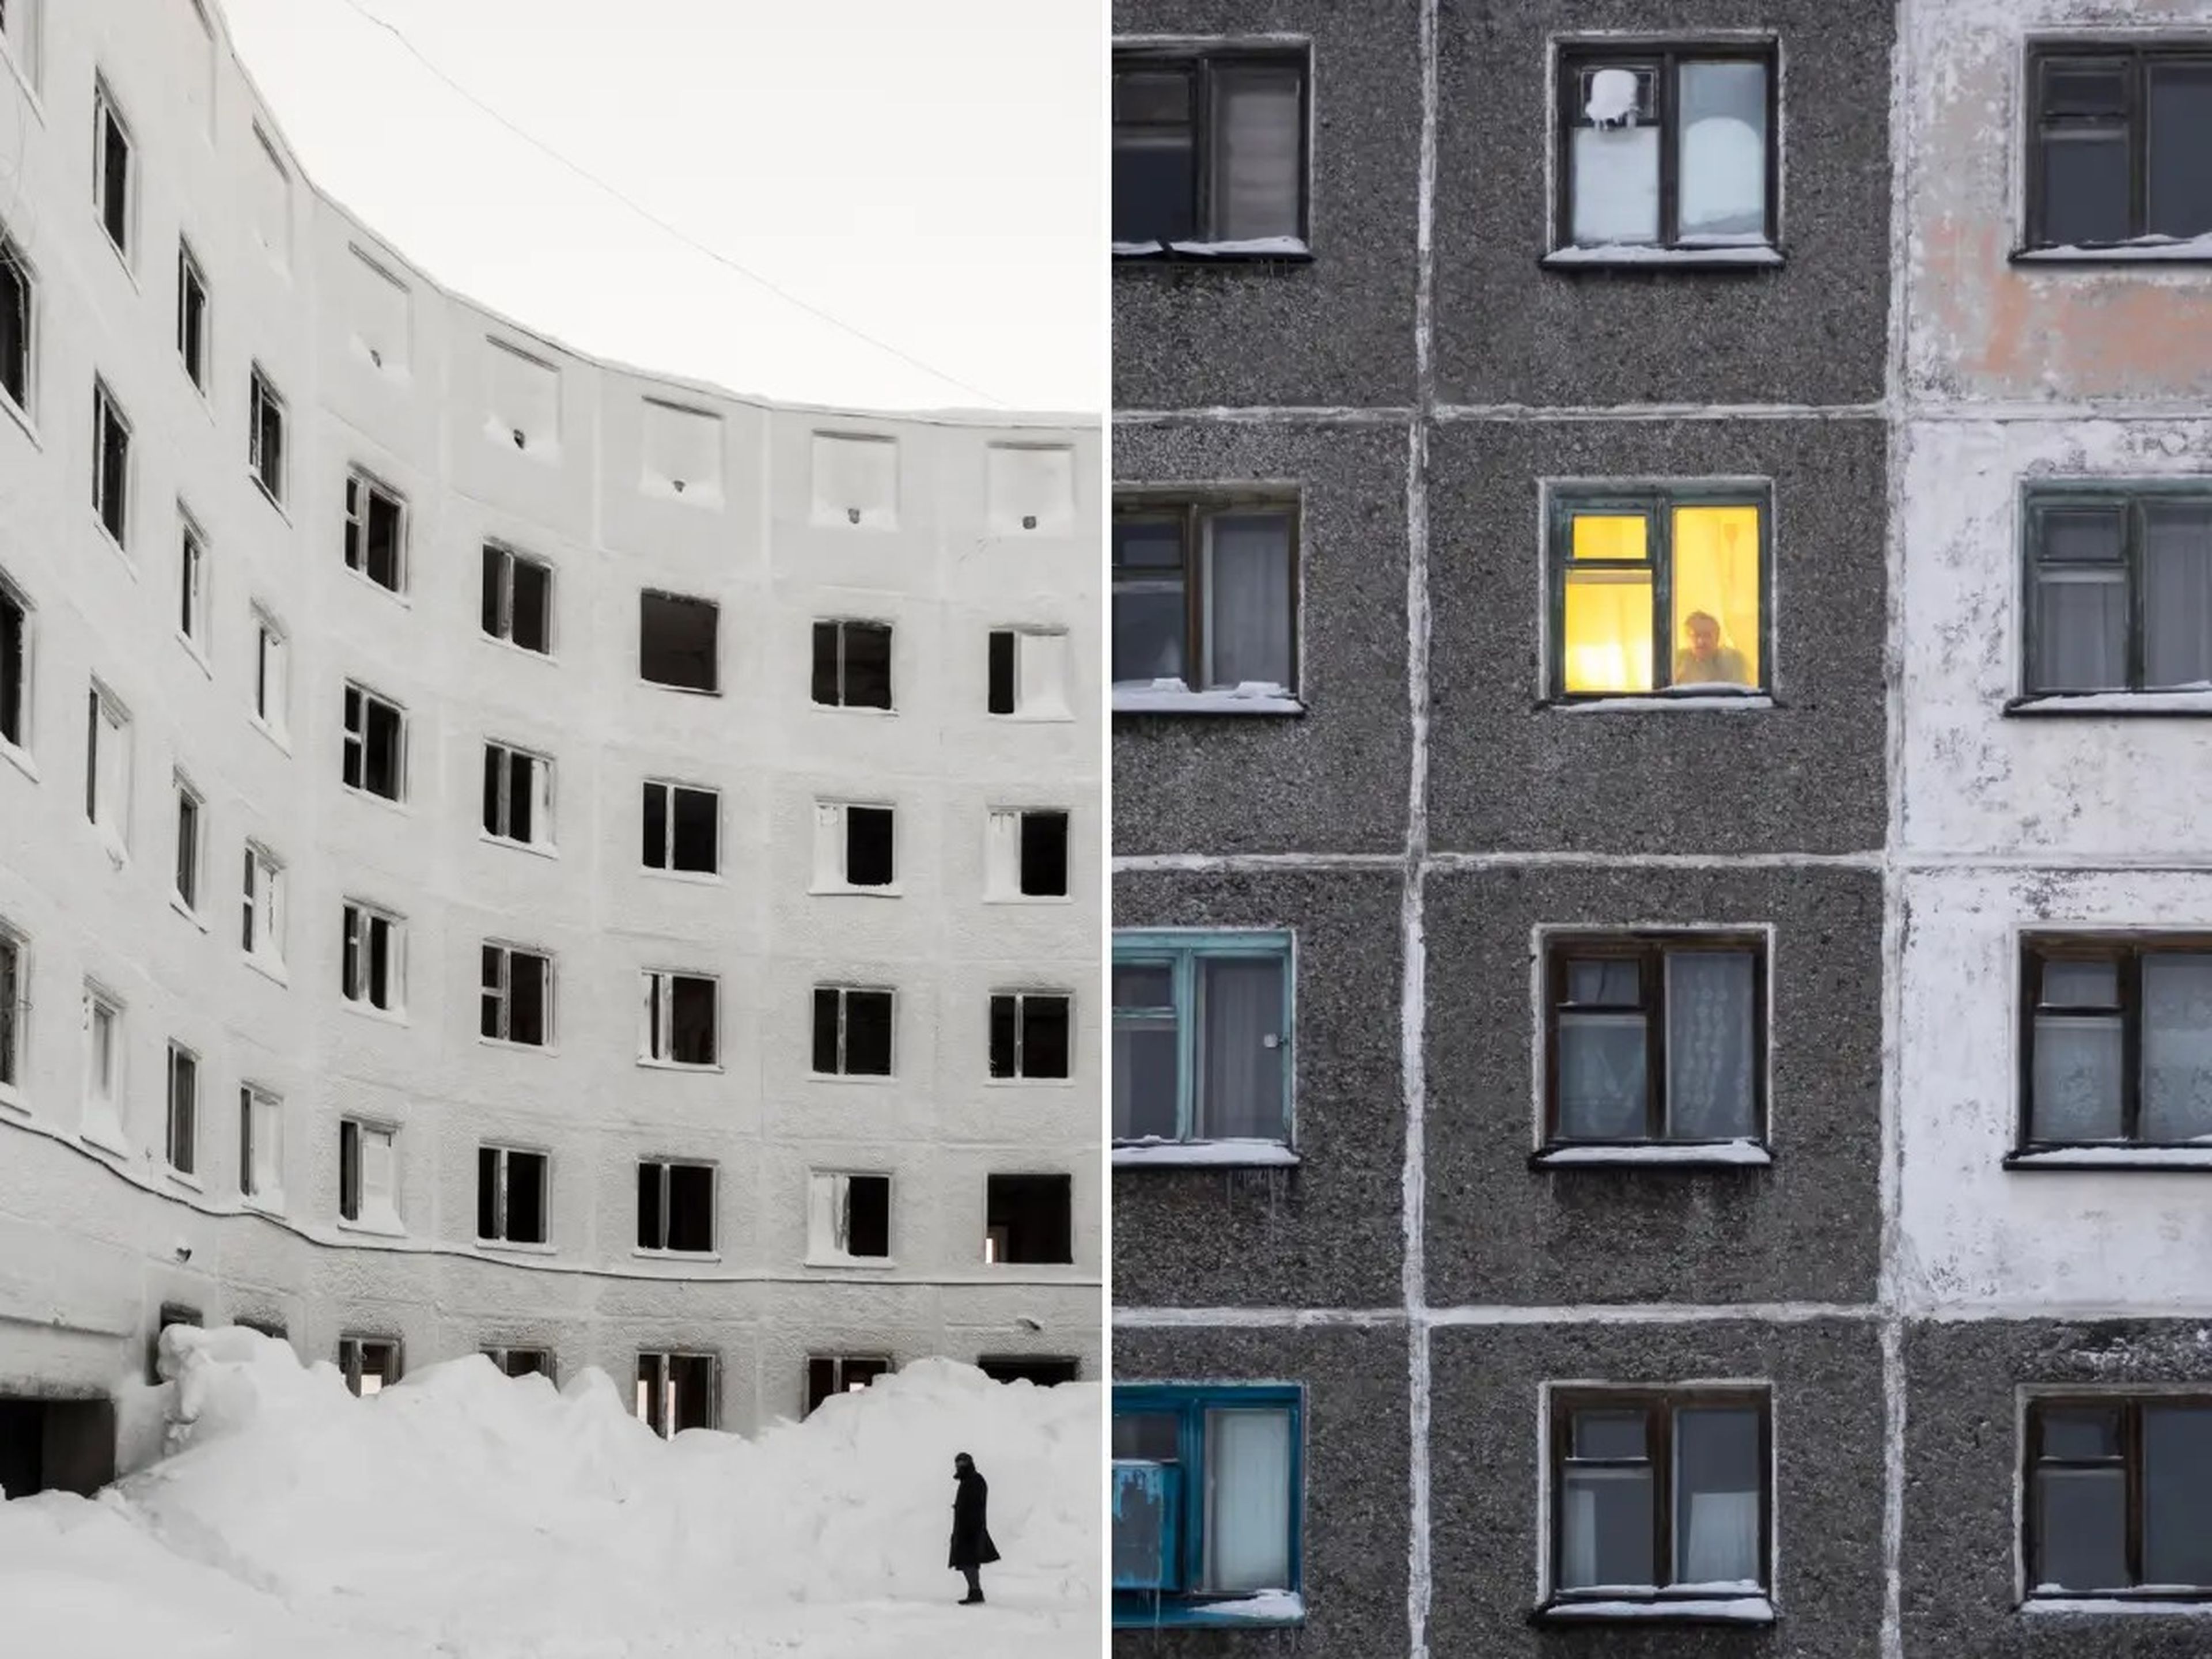 La fotógrafa contó que todavía hay personas que viven en estos edificios abandonados en las afueras de Vorkuta, Rusia.